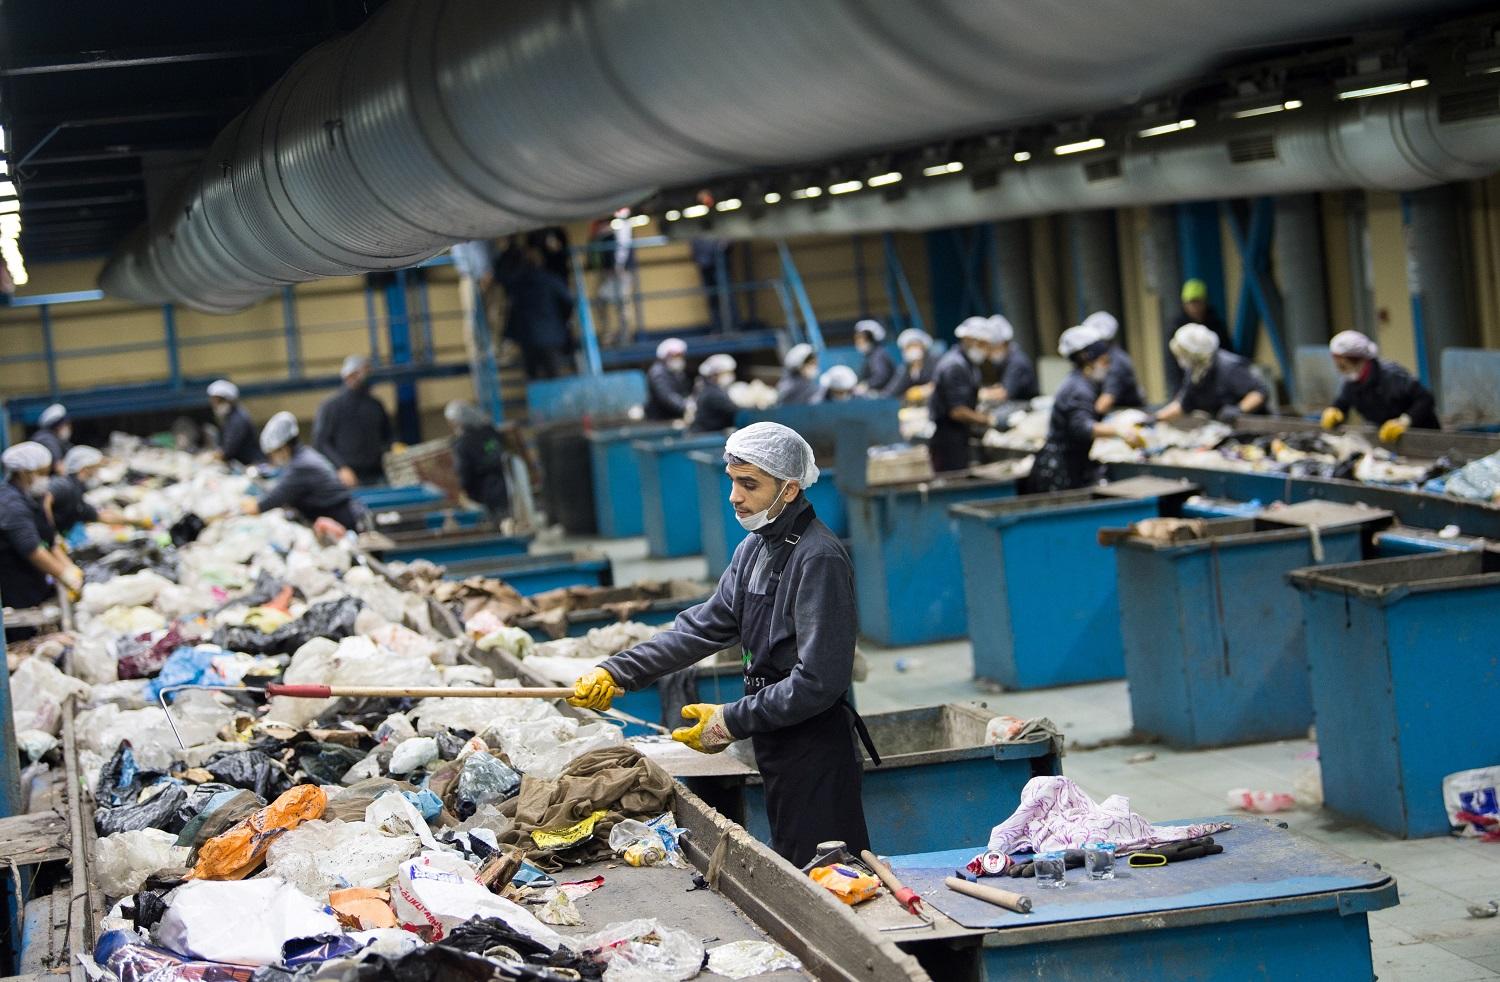 عمال أتراك في أحد مراكز تجميع النفايات في إسطنبول. بولاند كليتشيك/ أ ف ب 